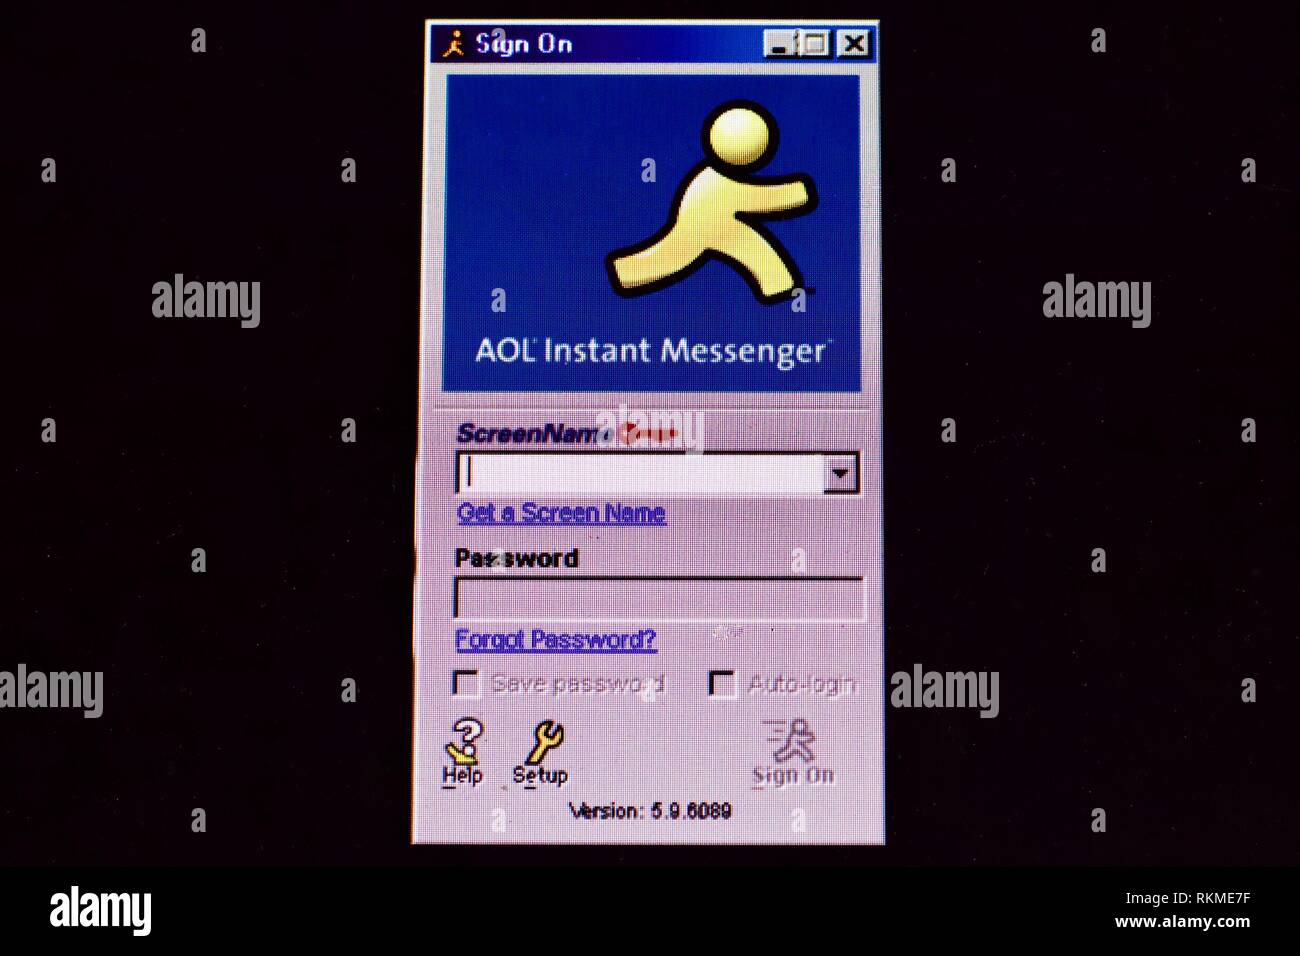 De login aol AOL Desktop